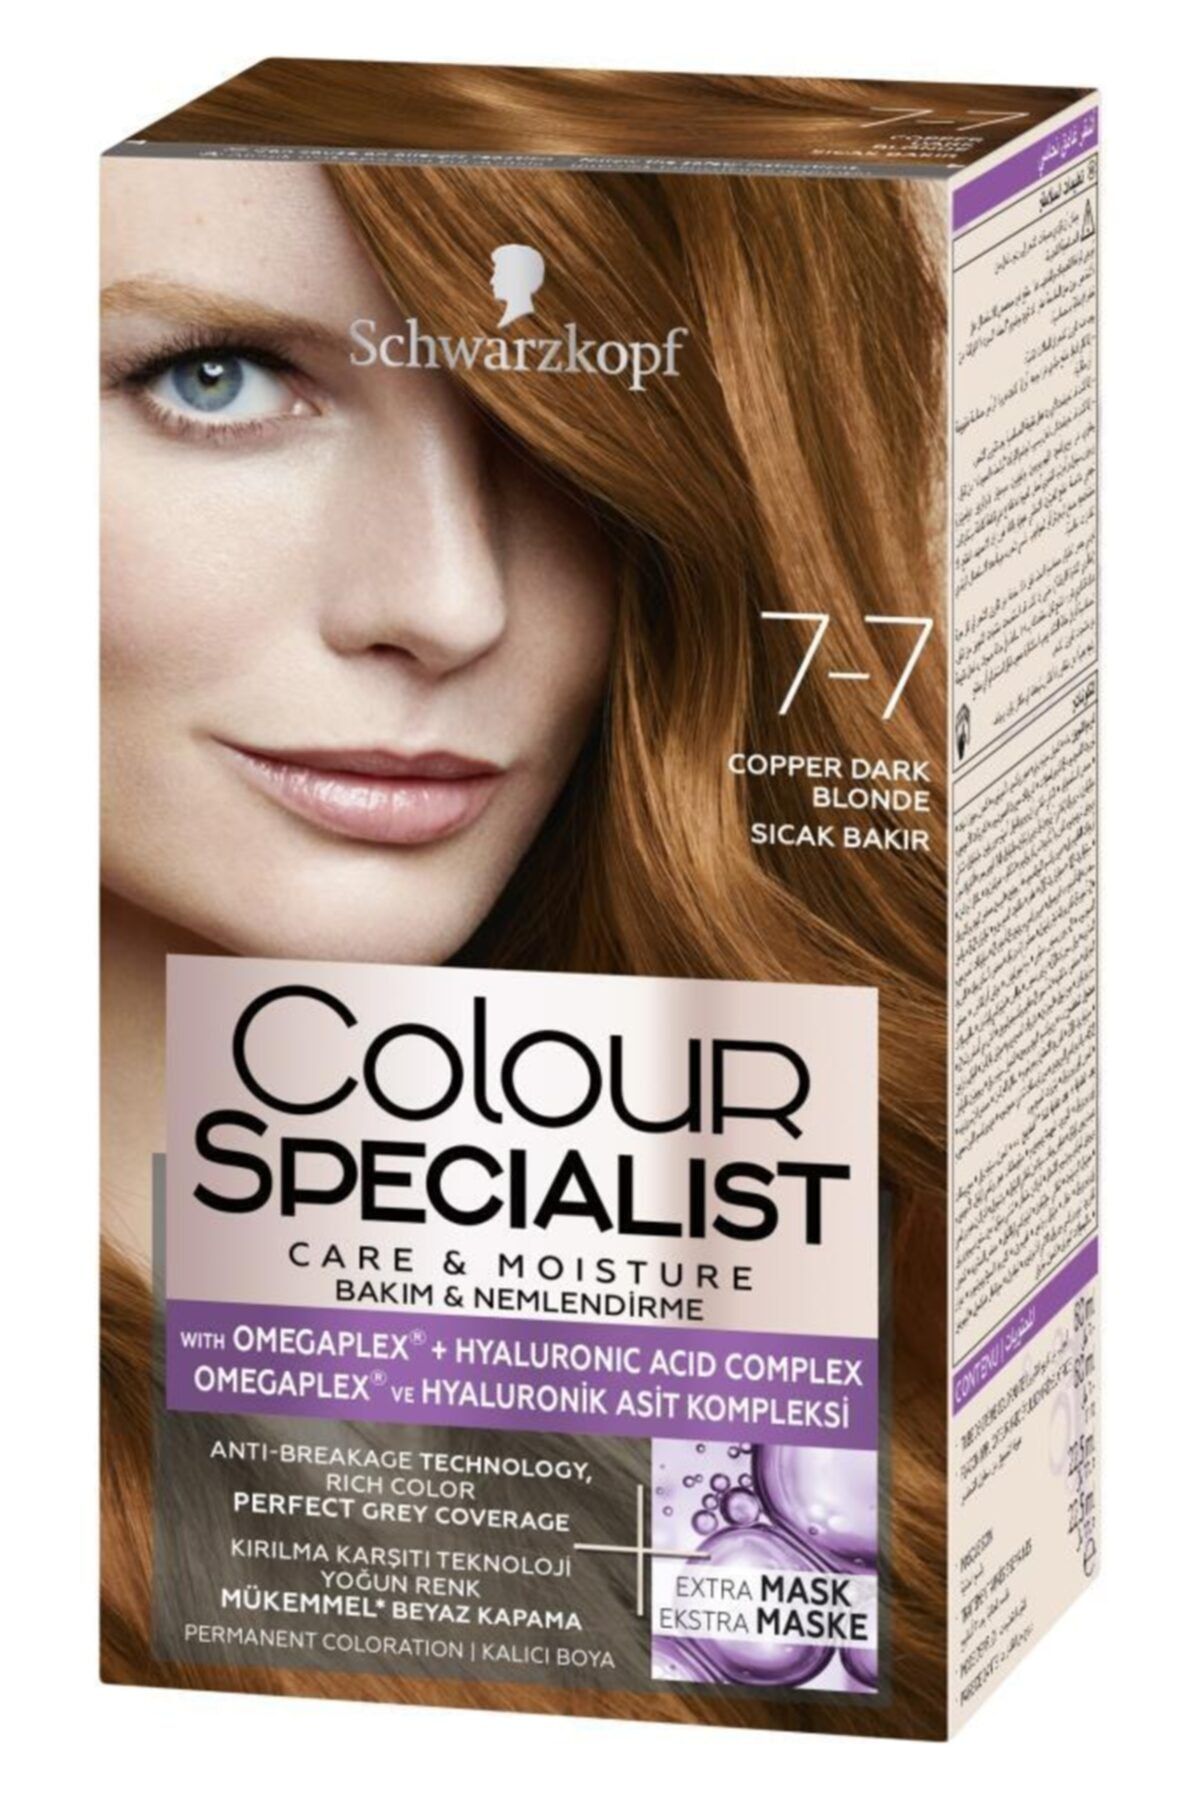 Colour Specialist Sıcak Bakır Saç Boyası 7-7